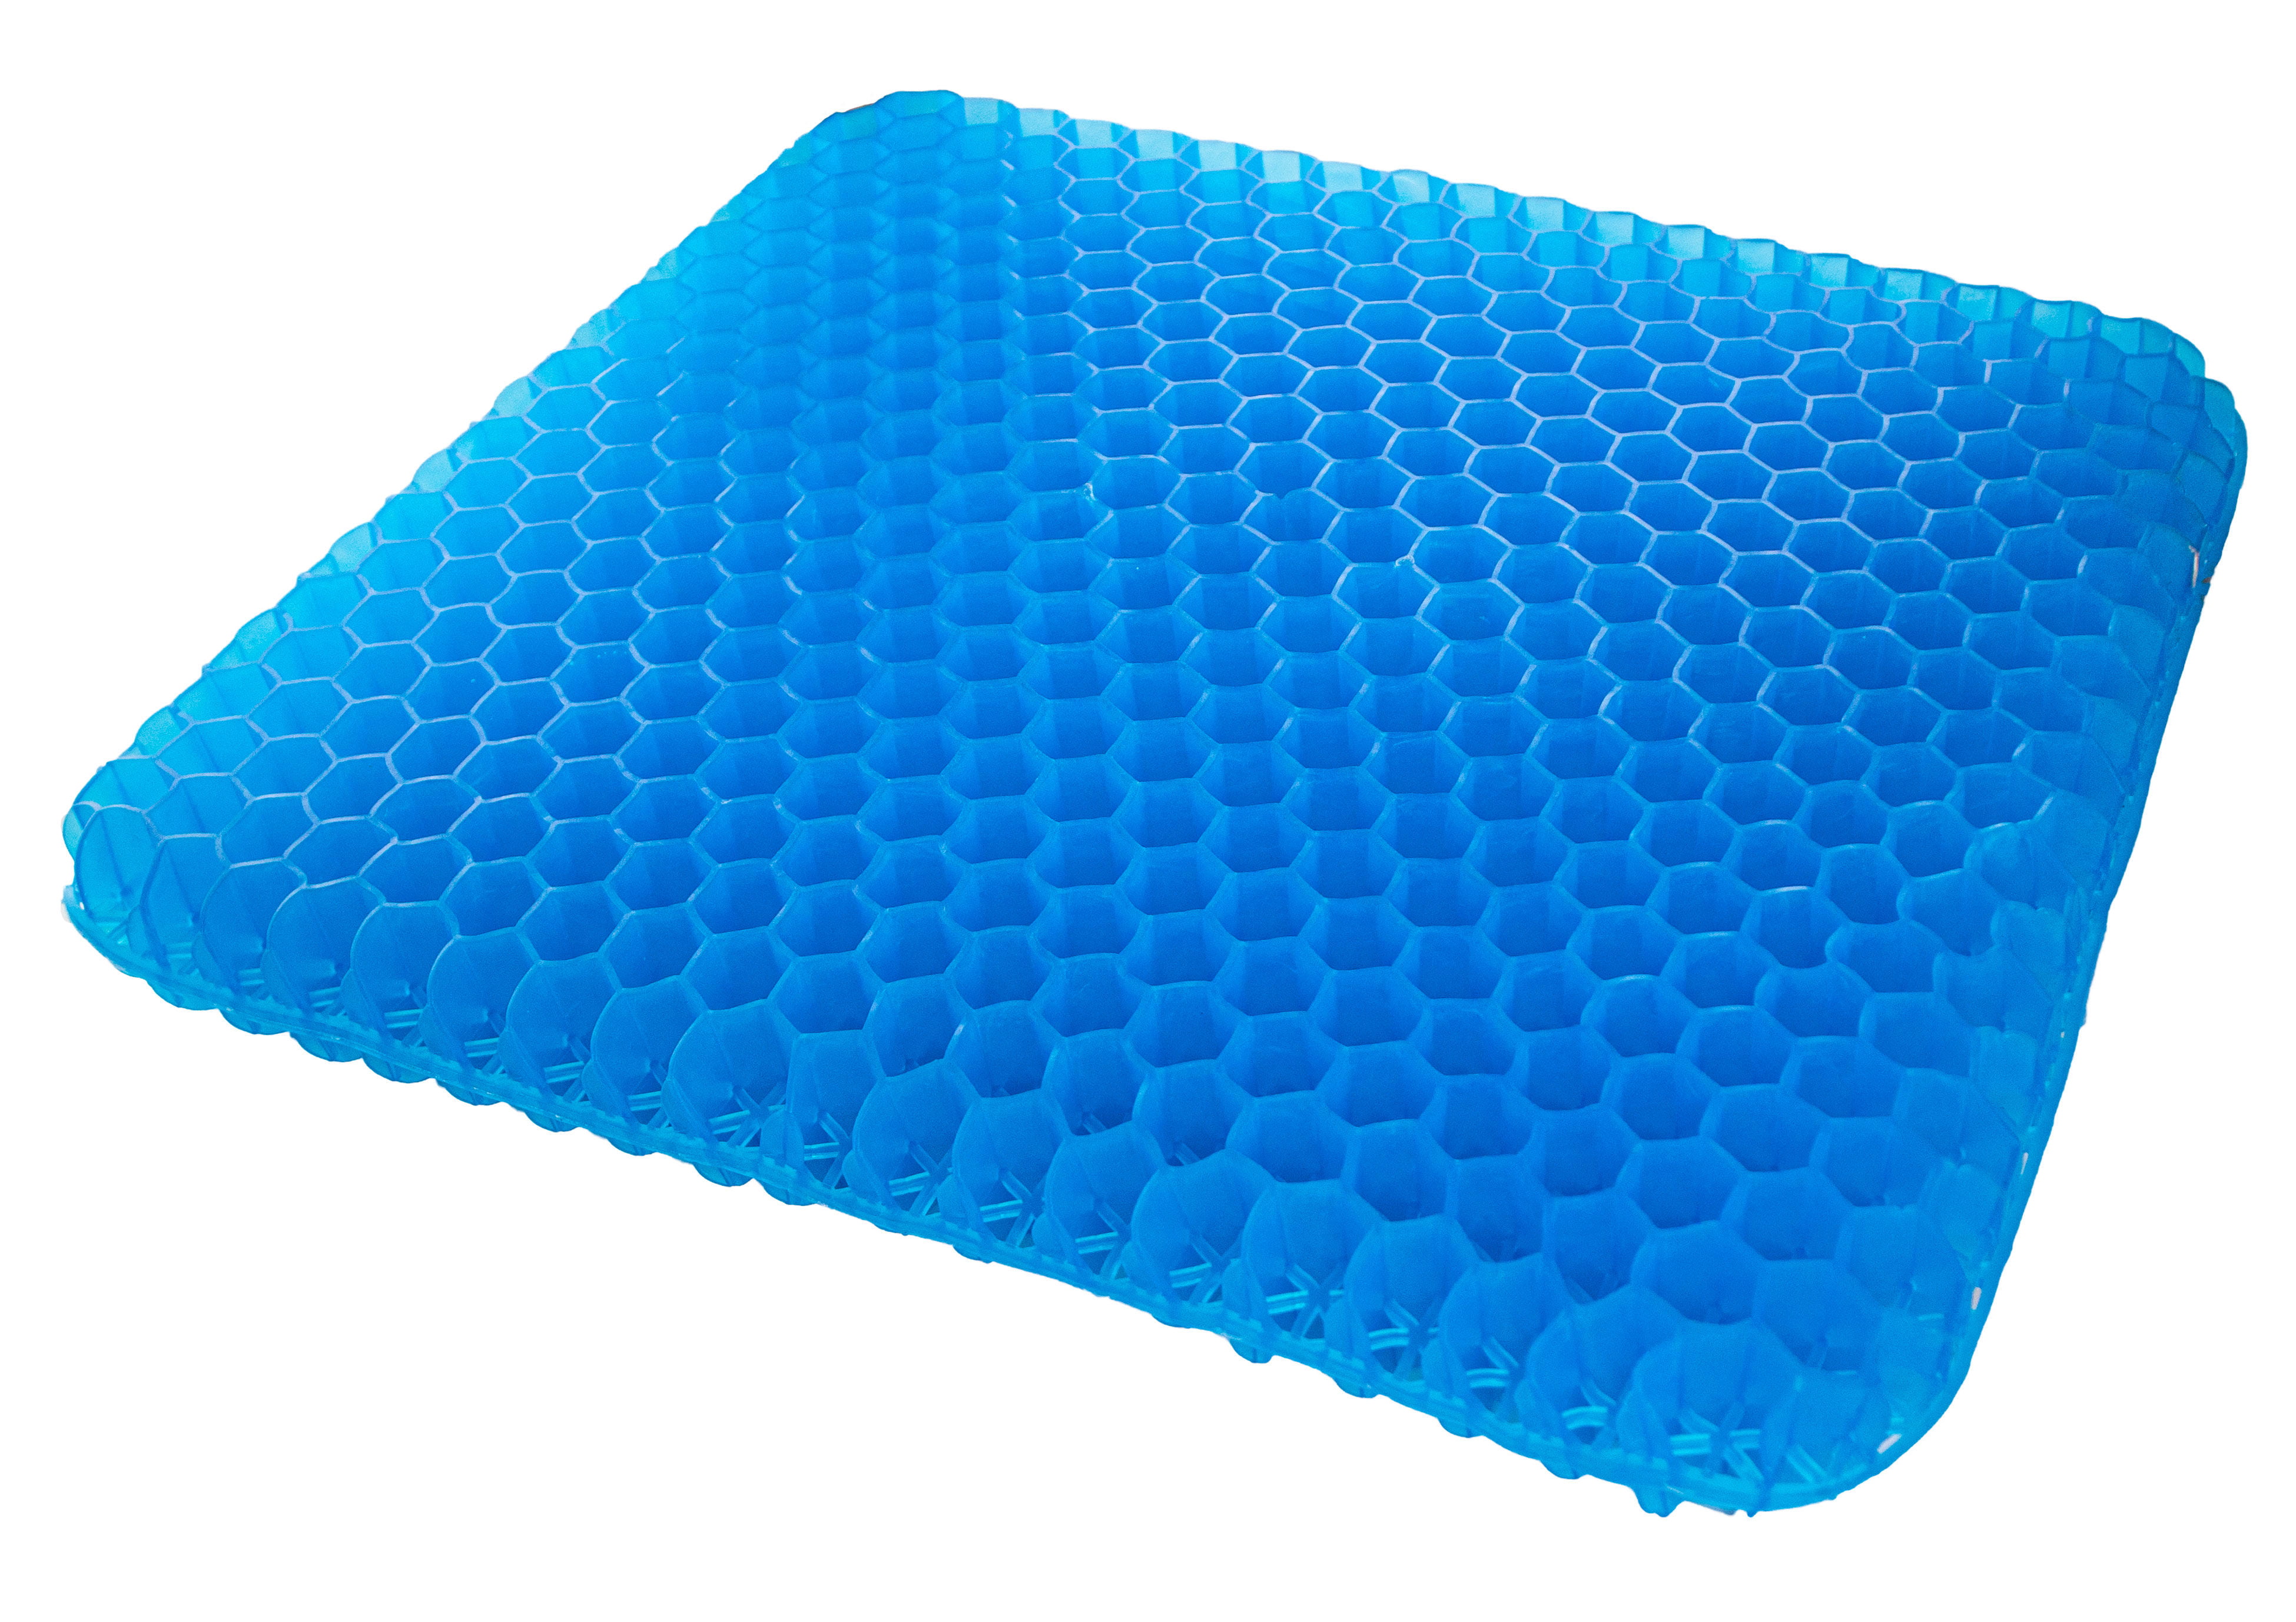 Egg Honeycomb Gel Seat Cushion - Ergonomic & Orthopedic Cooling